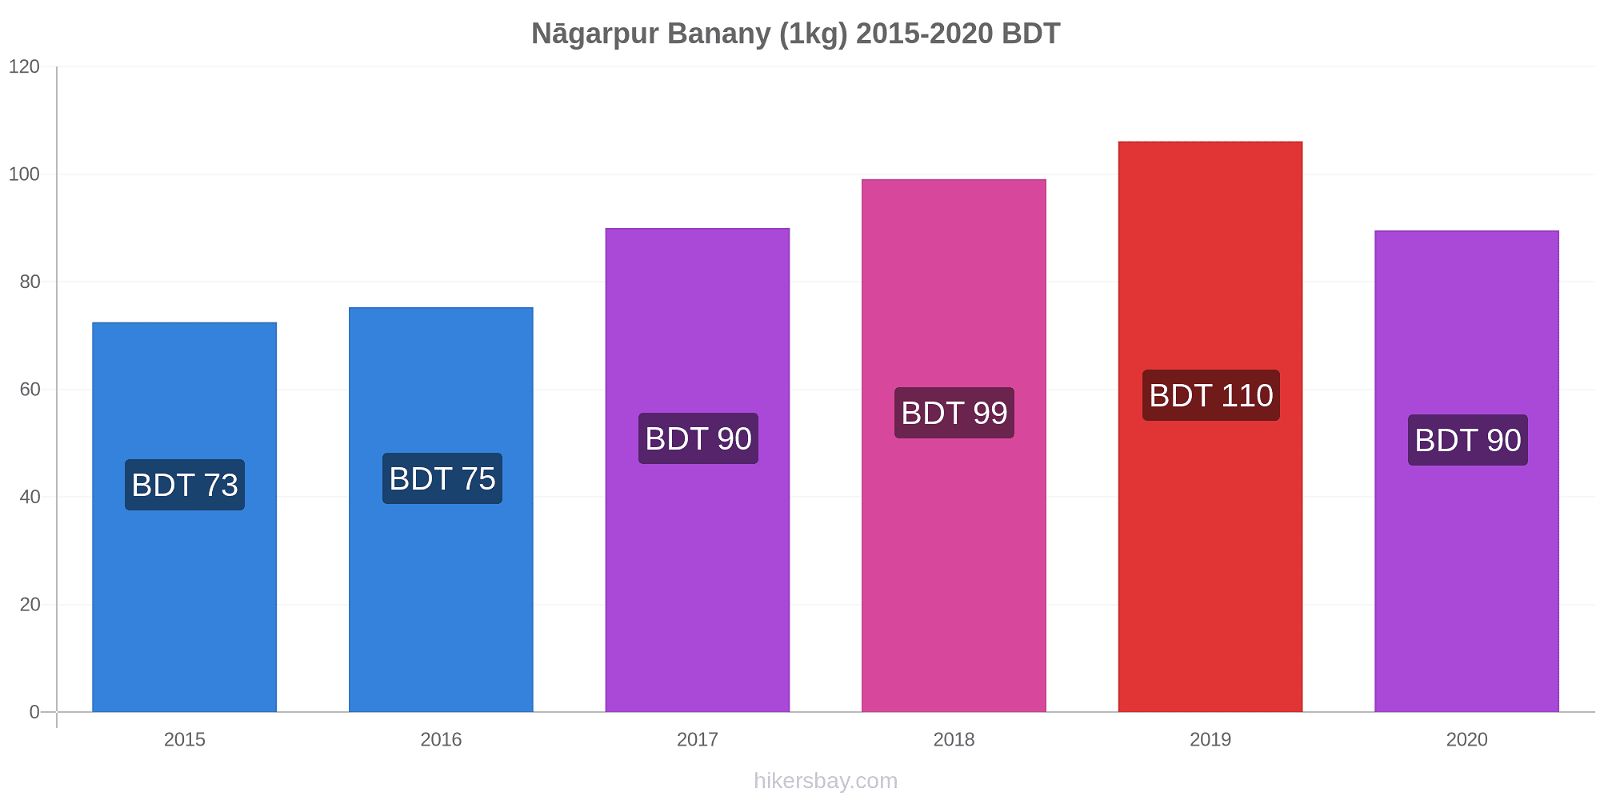 Nāgarpur zmiany cen Banany (1kg) hikersbay.com